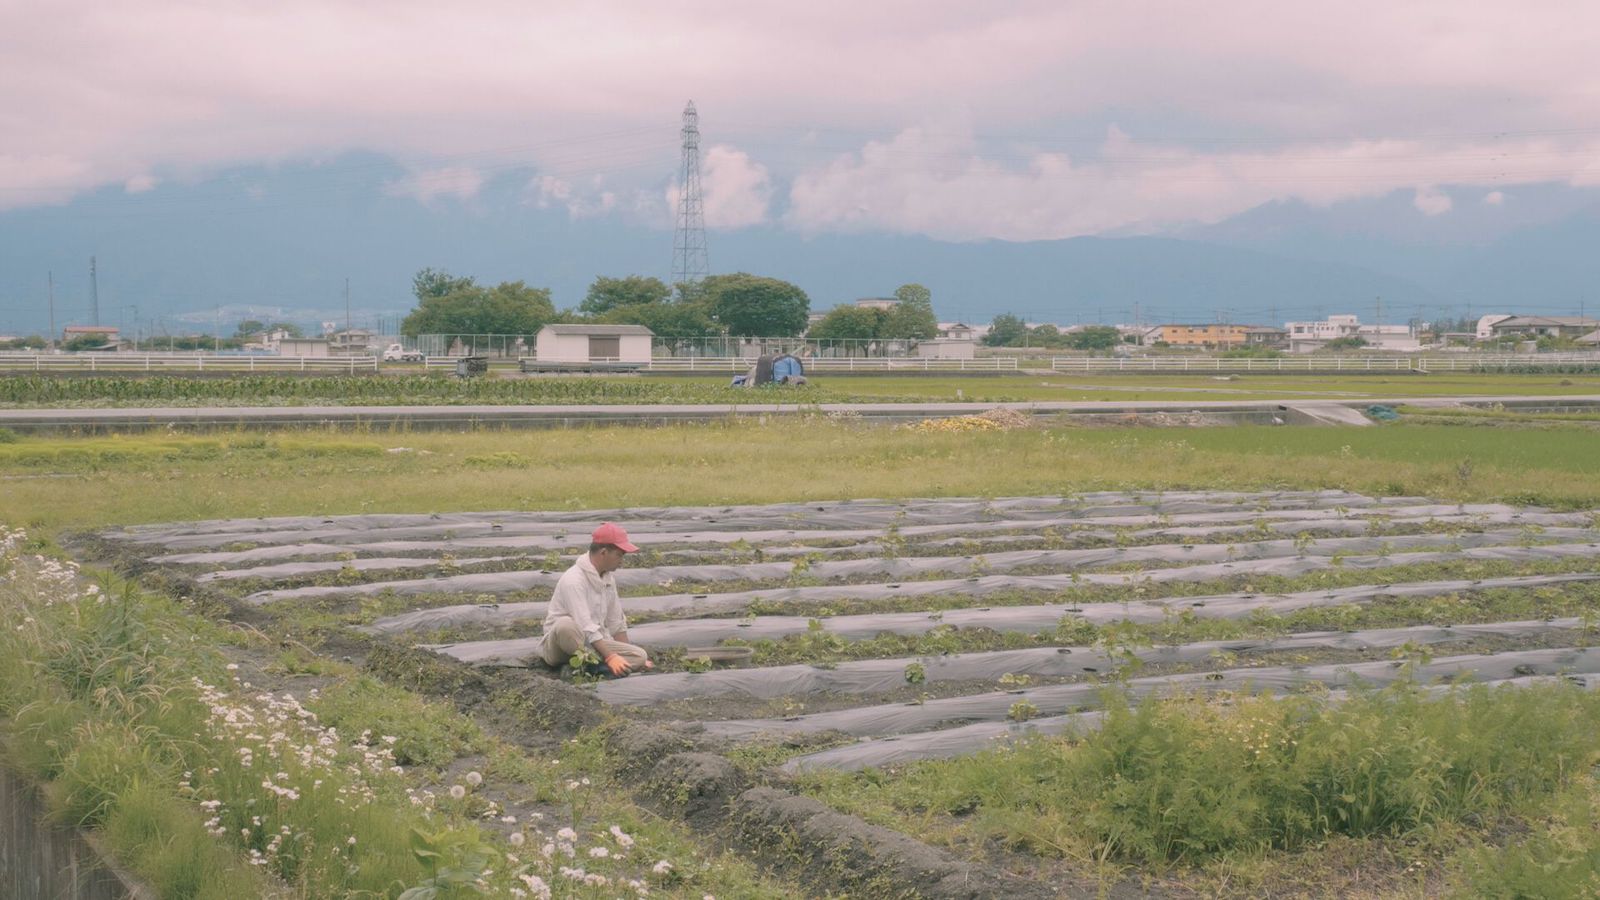 【写真】ドキュメンタリー映画『フジヤマコットントン』に登場する福祉事業所〈みらいファーム〉。同施設が所有する畑に、利用者のおおもりさんがひとりで座っている様子。